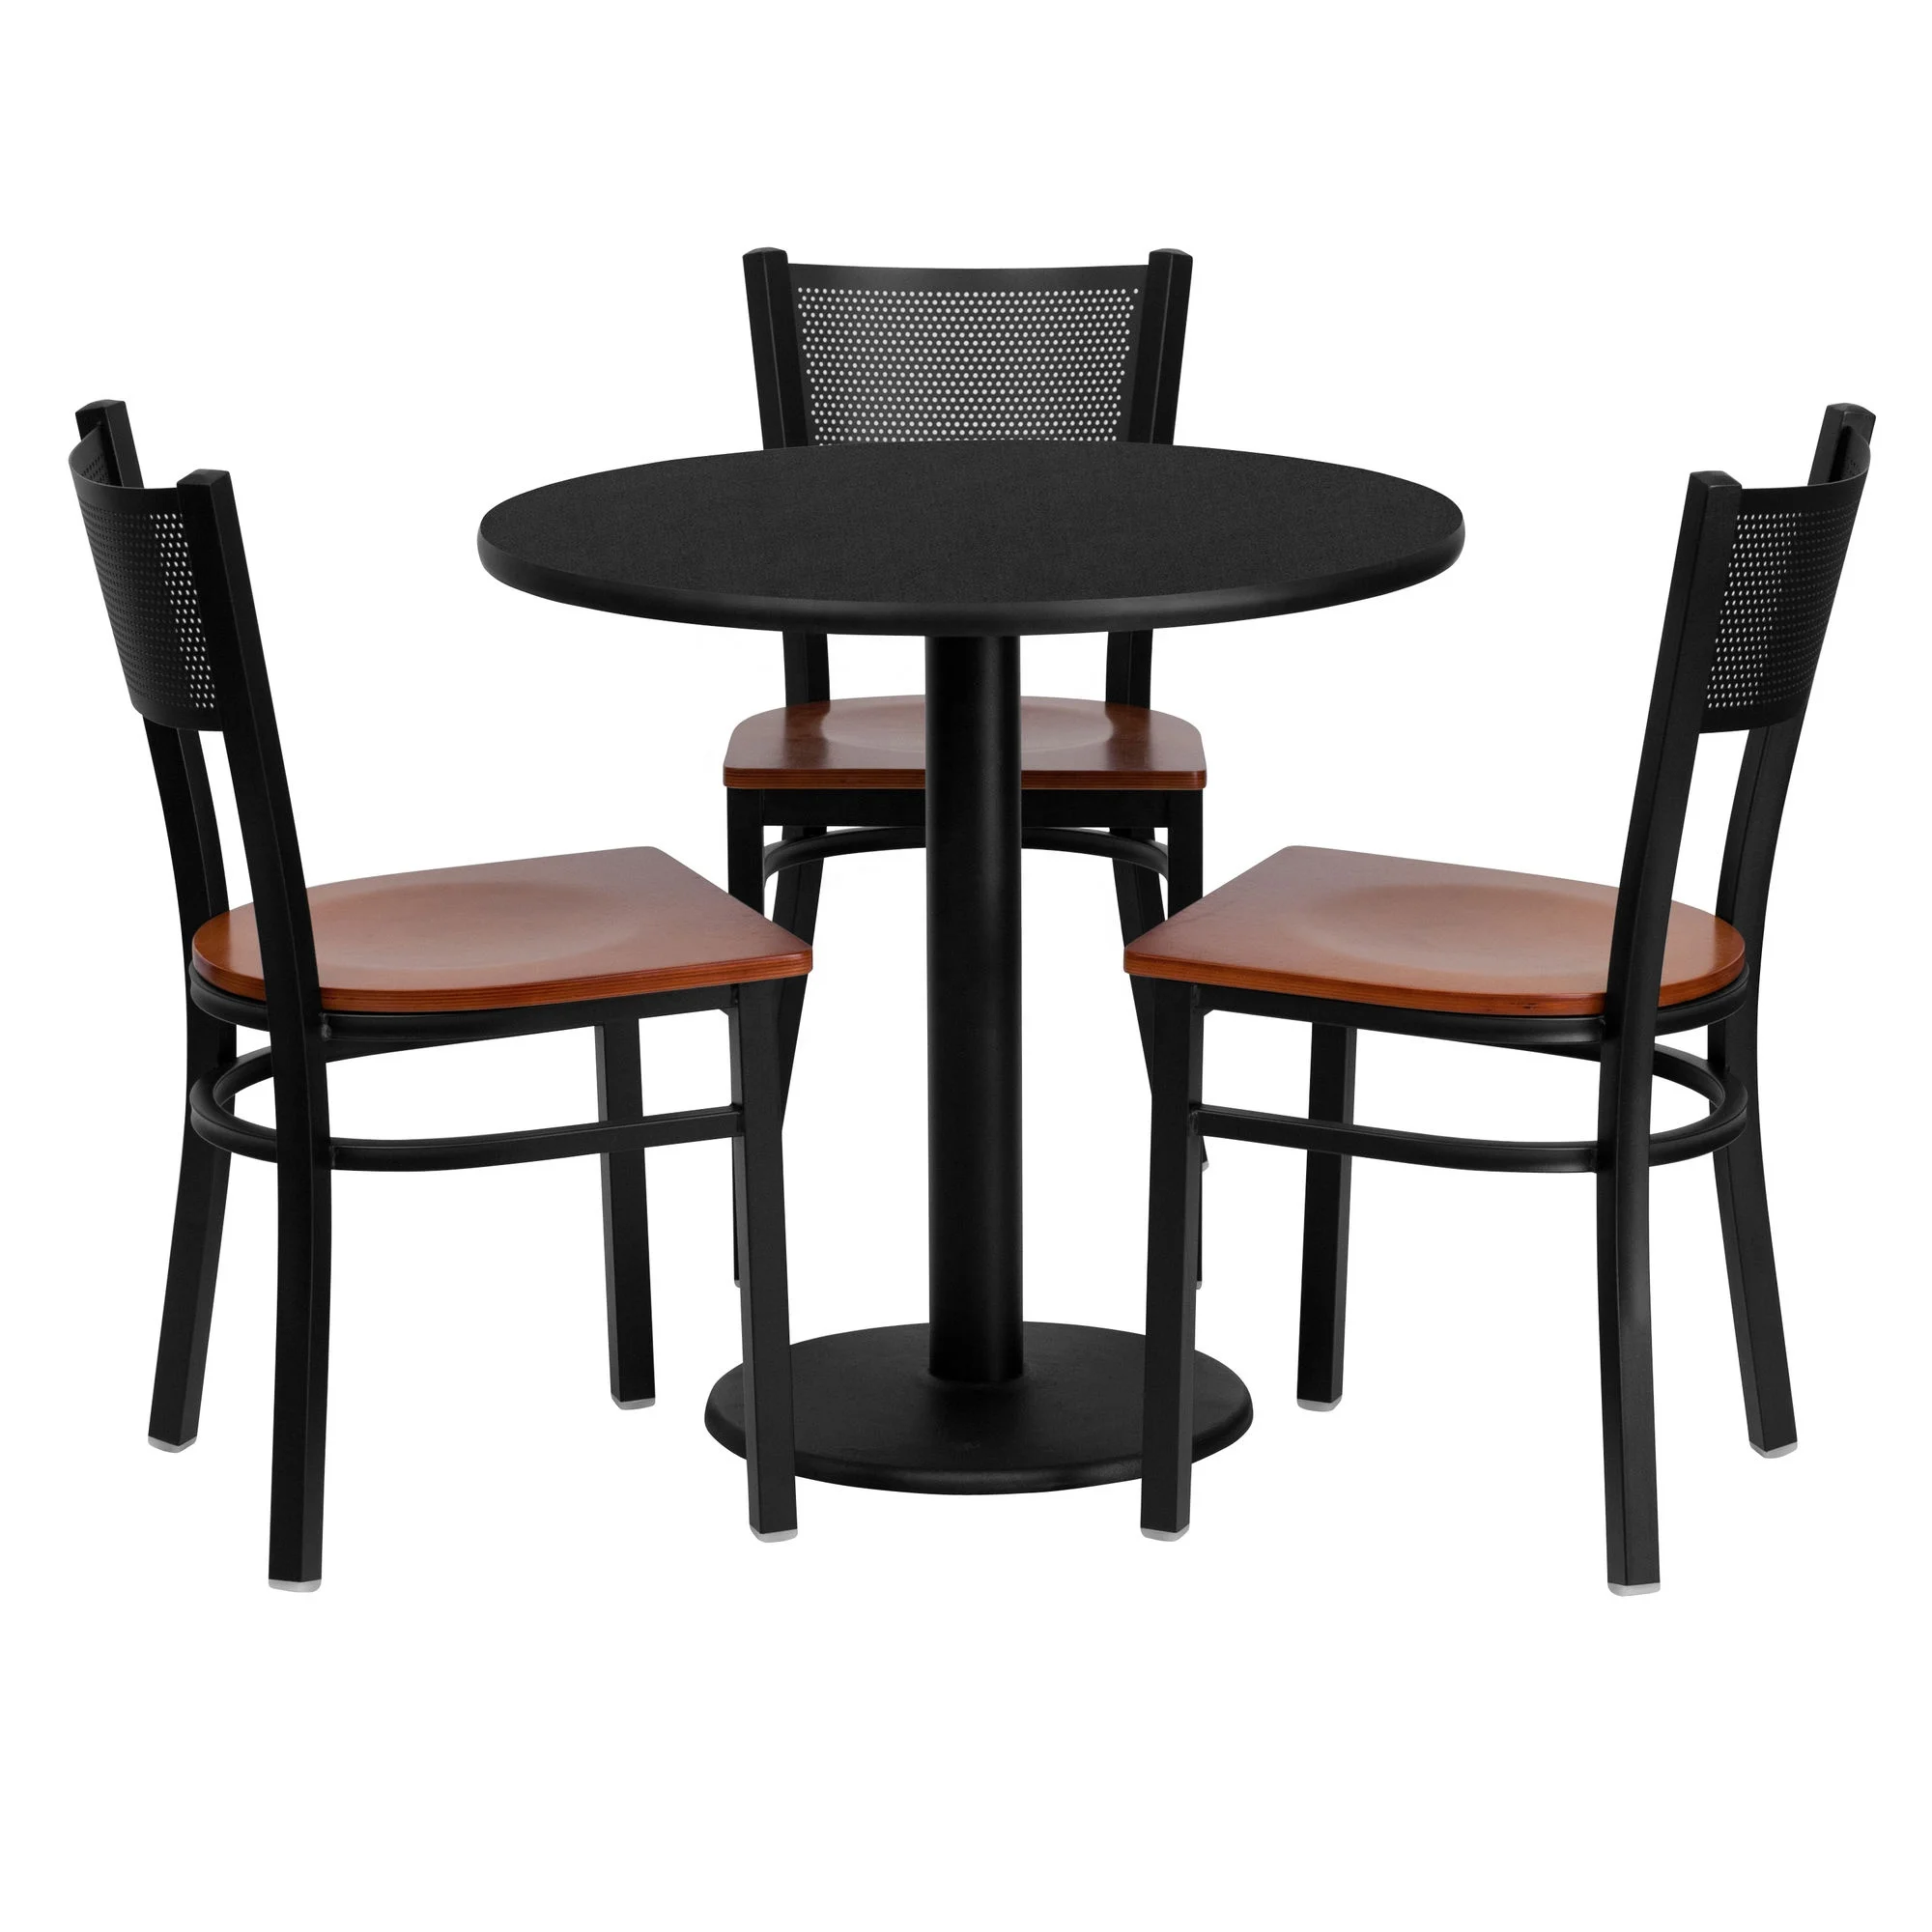 За отдельными столиками. Столы и стулья. Стул со столиком. Столы и стулья для кафе. Столик для кафе круглый.